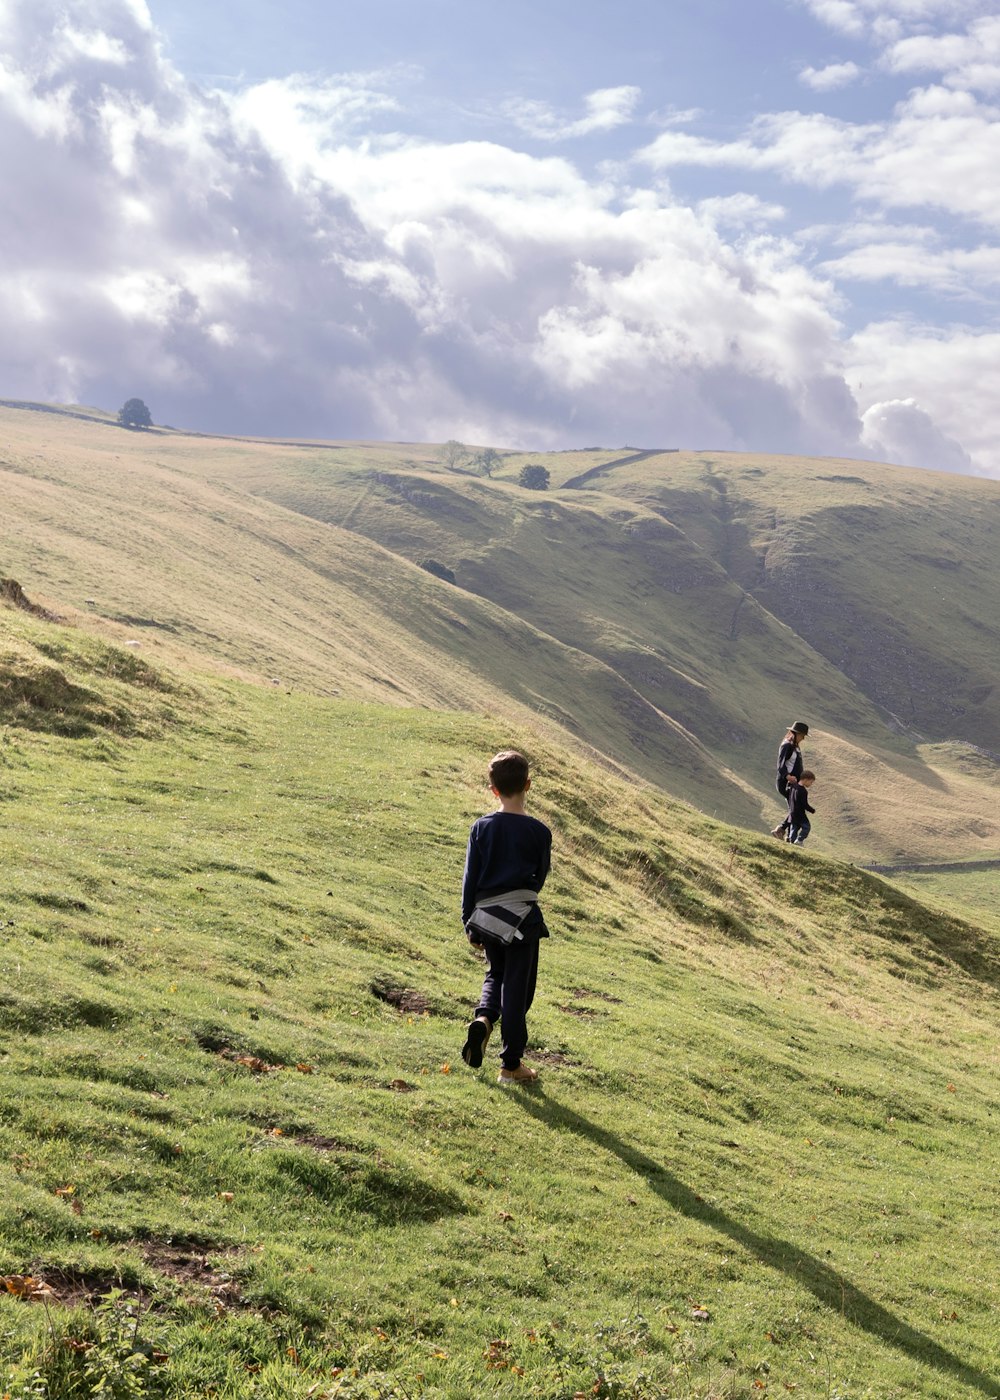 Un grupo de personas caminando sobre una colina cubierta de hierba